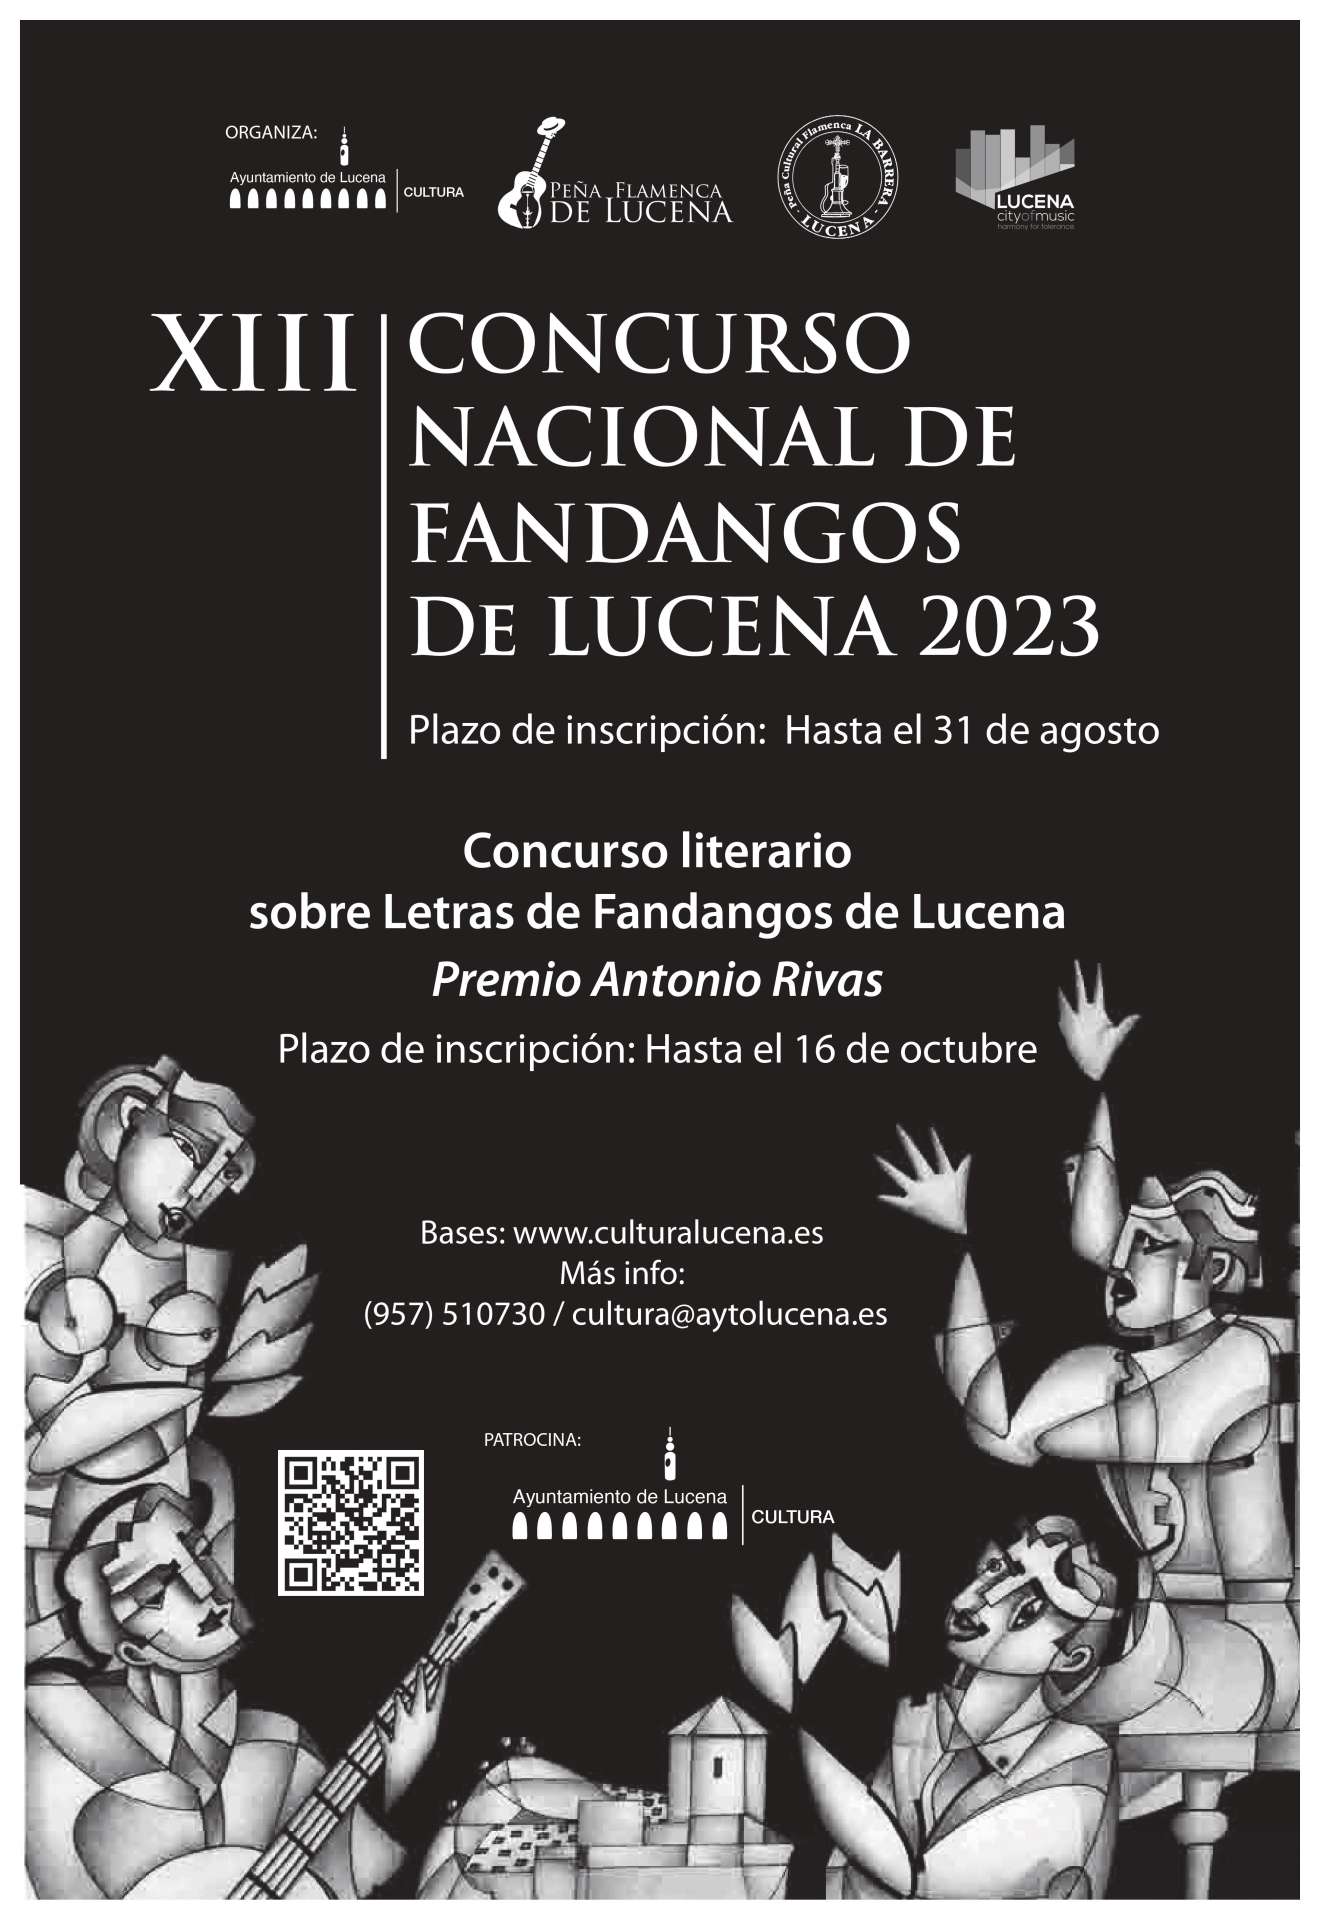 XIII Concurso Nacional de Fandangos de Lucena: abierto plazo de inscripción hasta el próximo 31 de agosto.